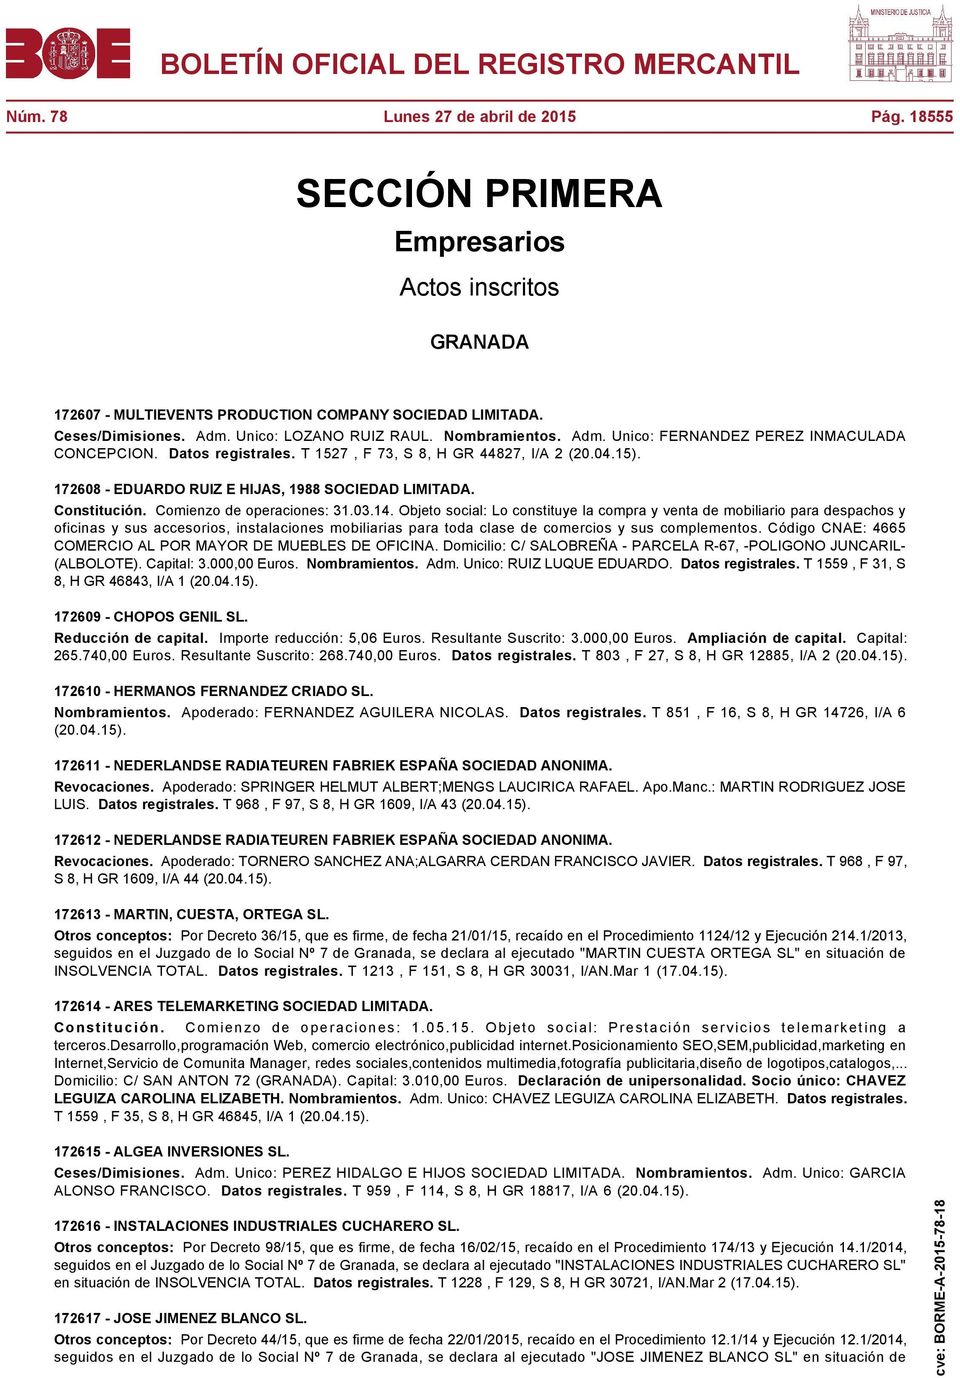 172608 - EDUARDO RUIZ E HIJAS, 1988 SOCIEDAD LIMITADA. Constitución. Comienzo de operaciones: 31.03.14.